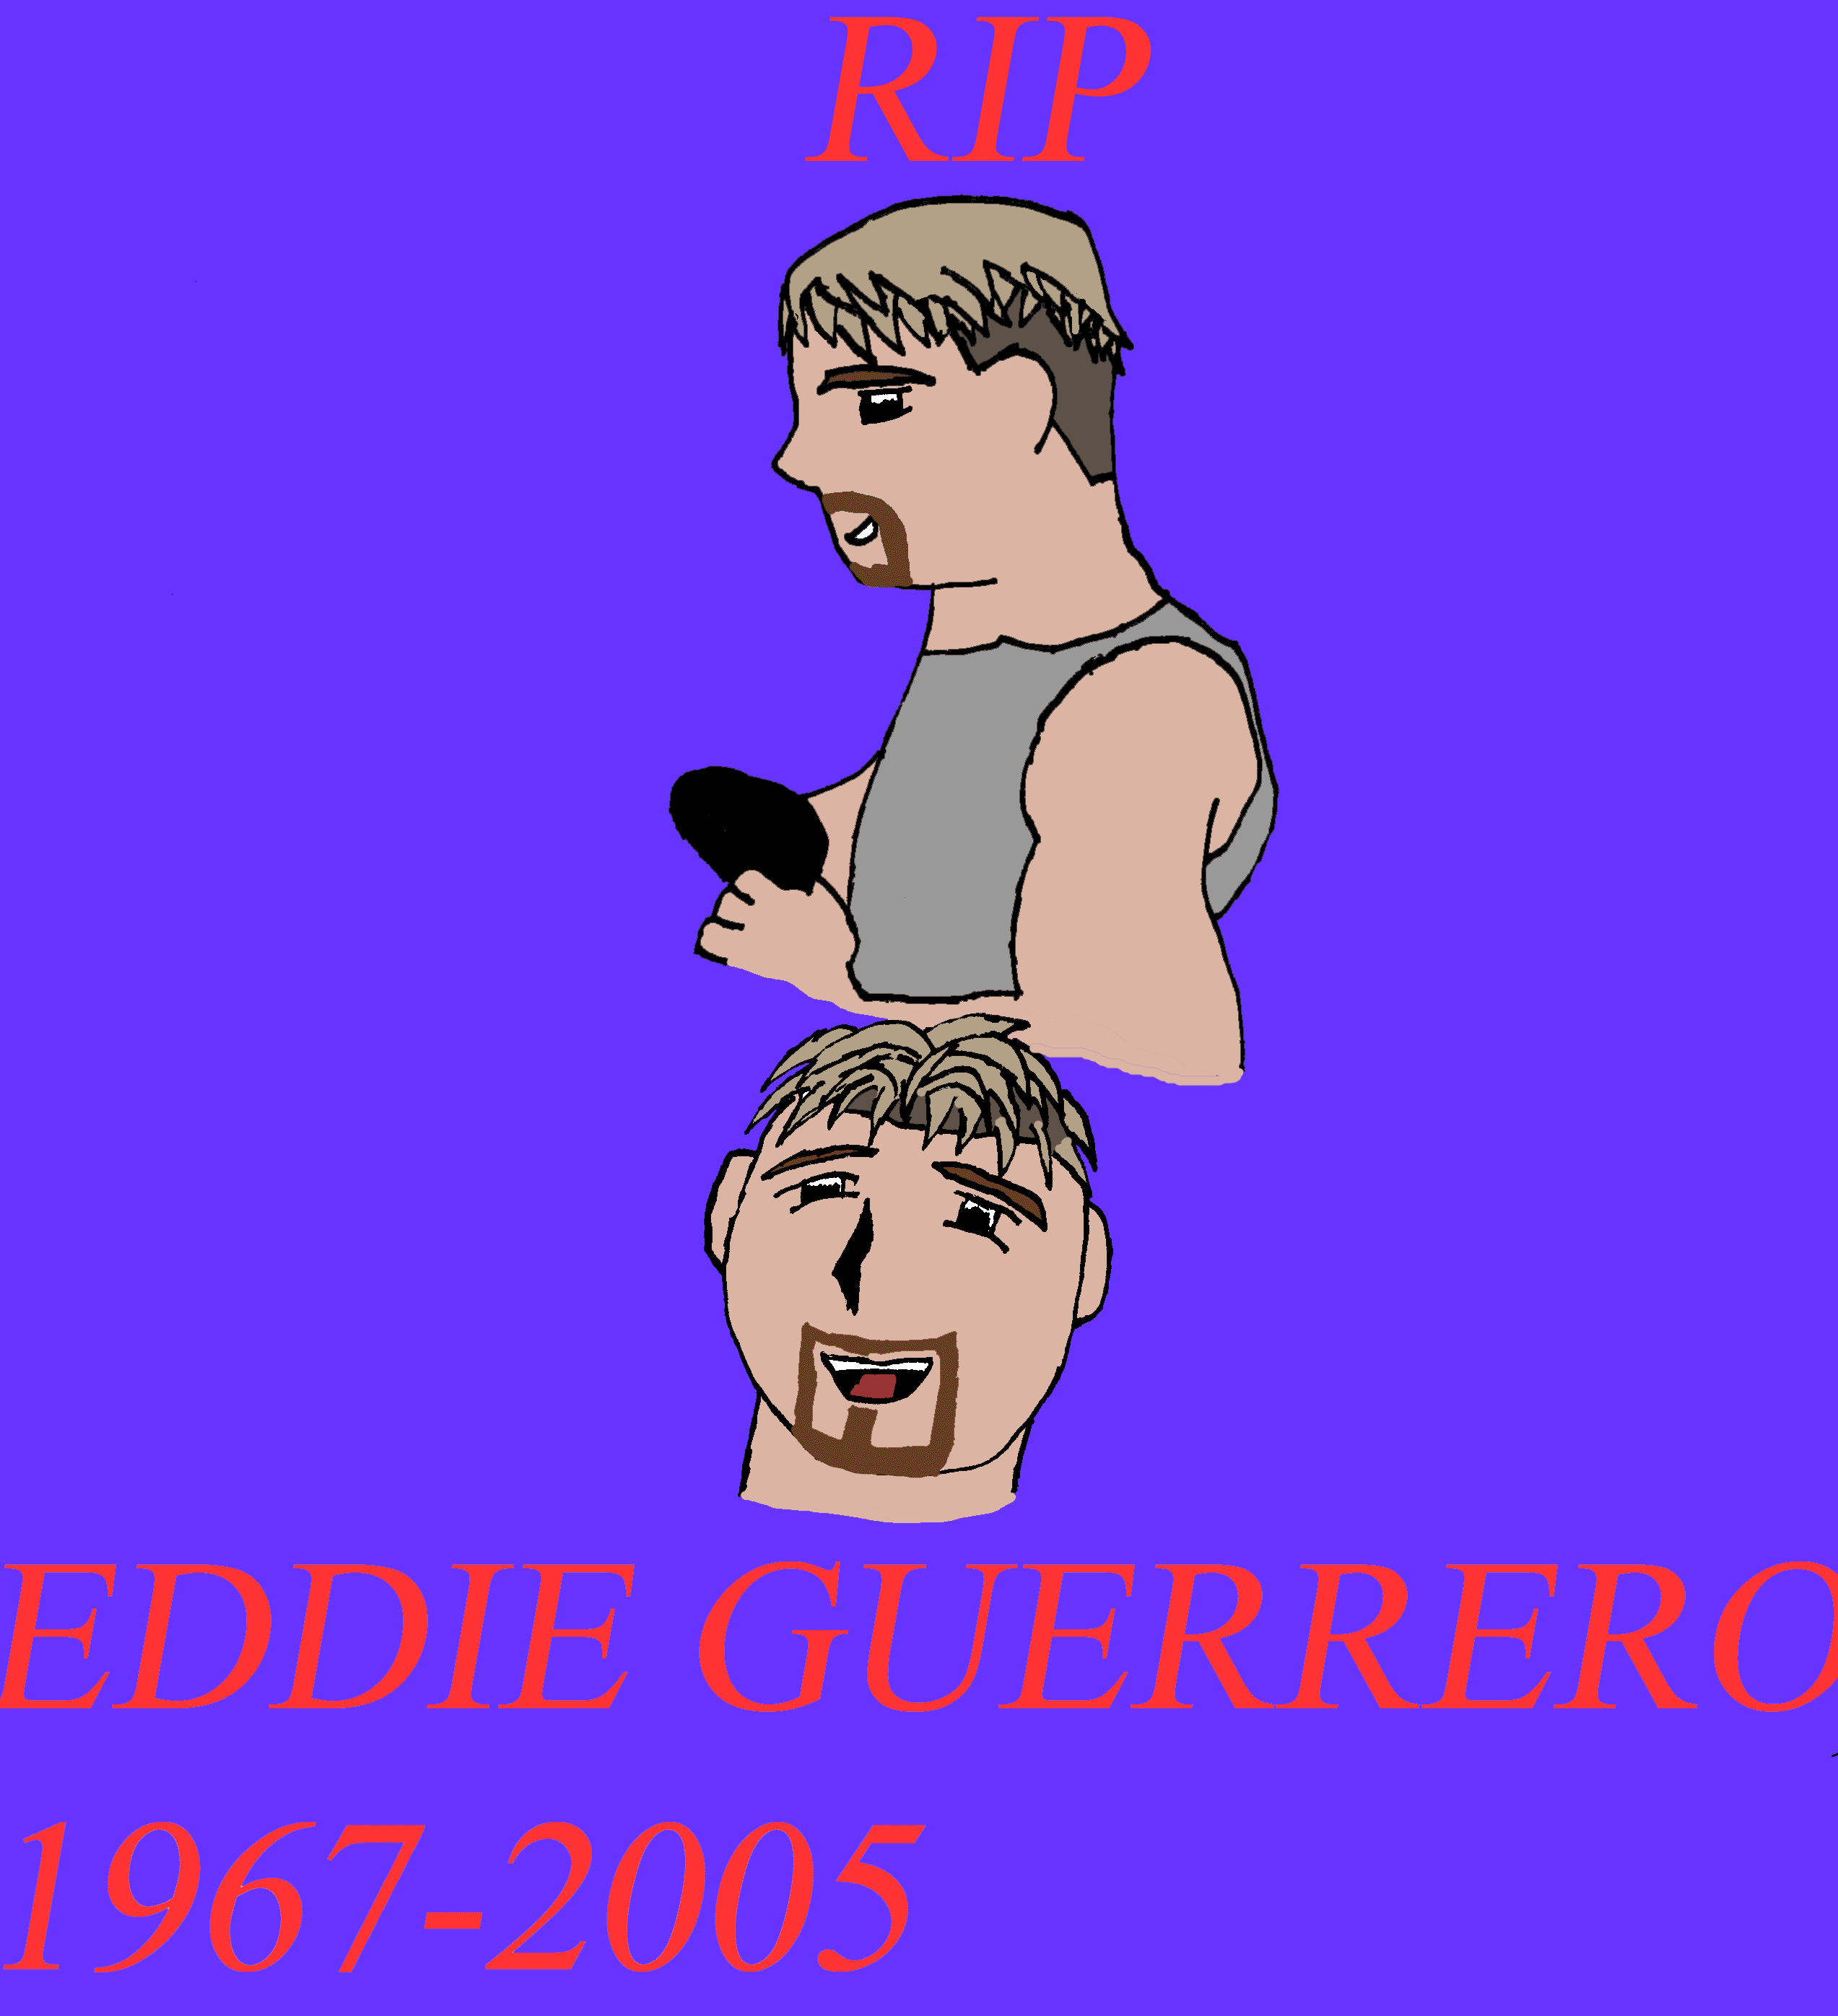 Eddie Guerrero 1967-2005 RIP by Protofan108